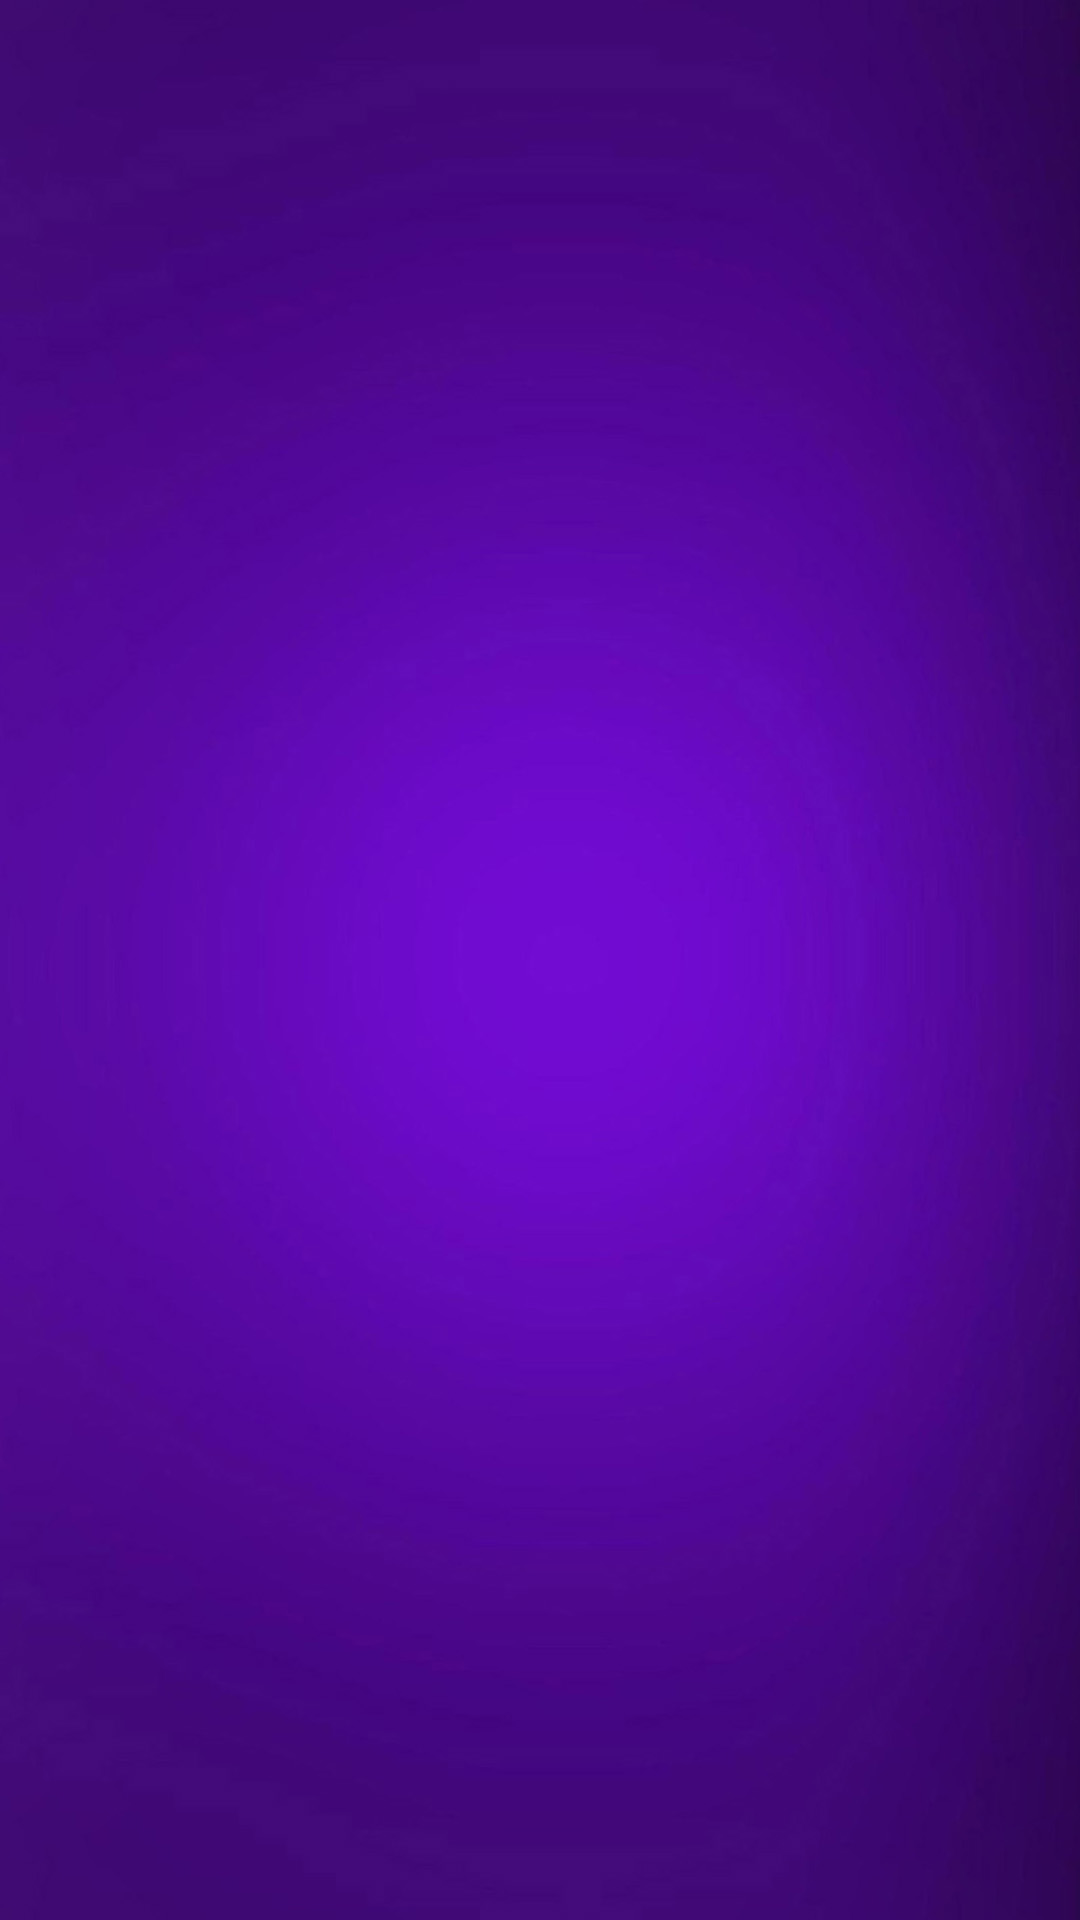 Iphone12 壁紙 紫 Iphone12 壁紙 紫 Gambarsaevvu